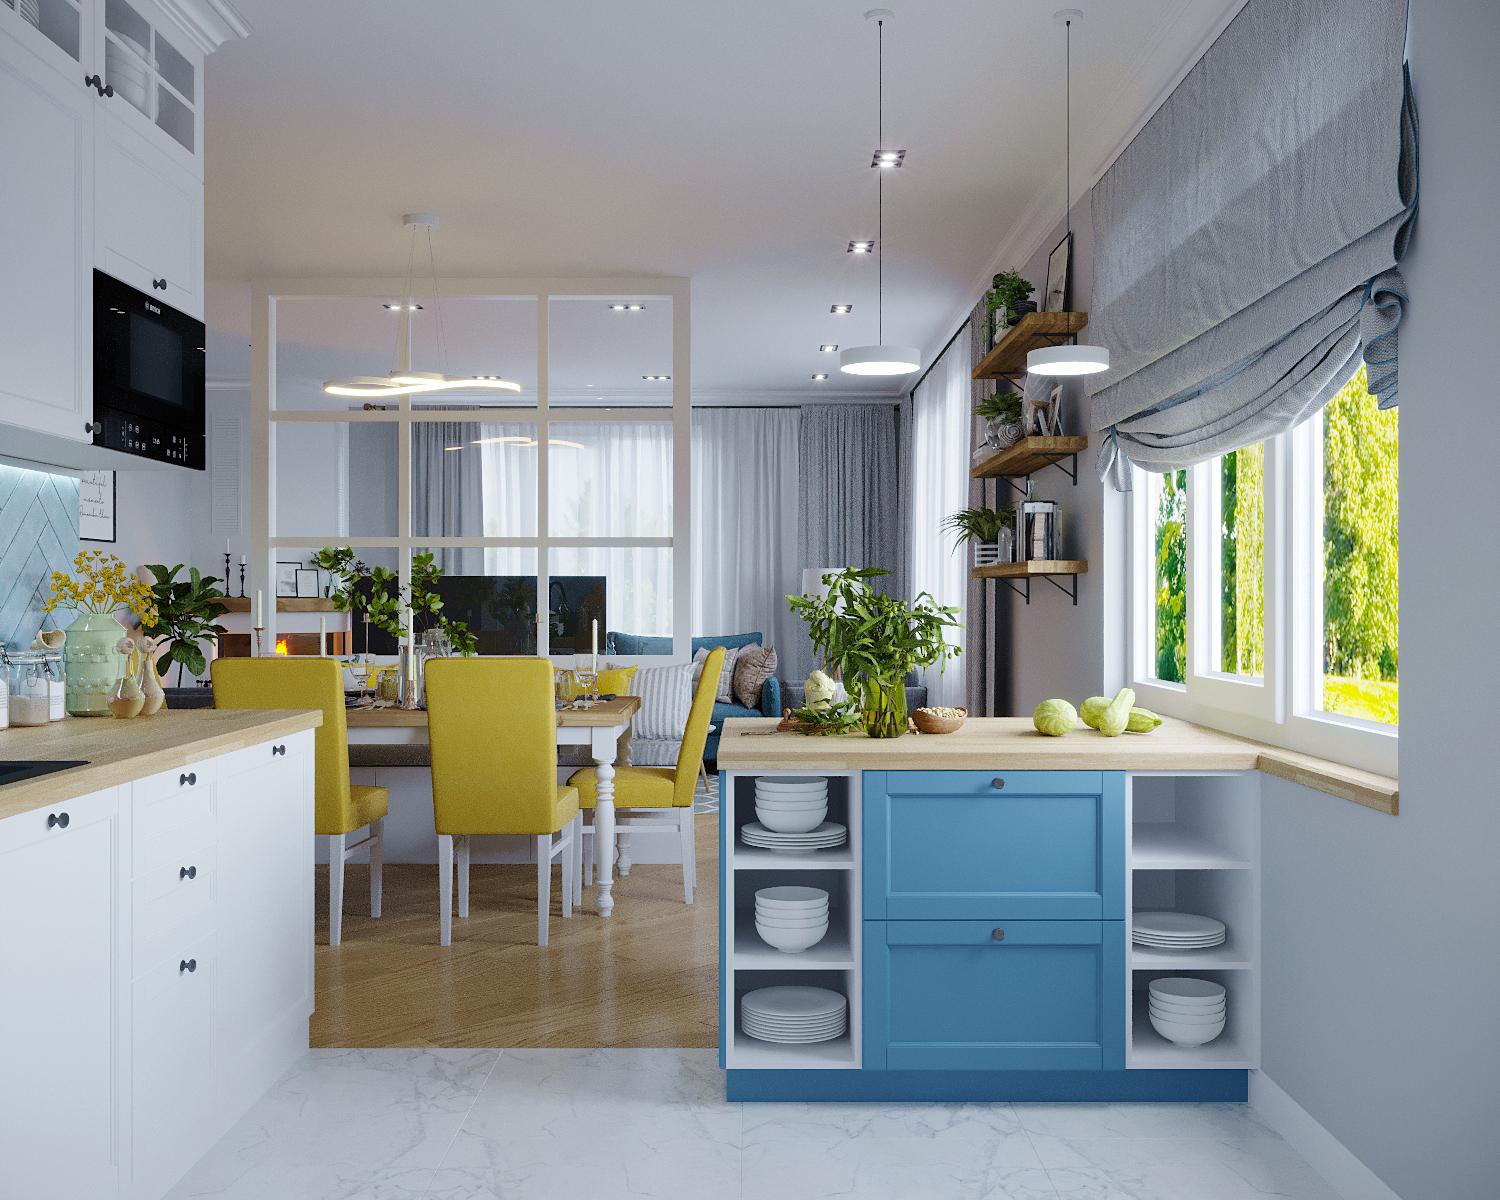 Couloir de la cuisine dans 3d max corona render image